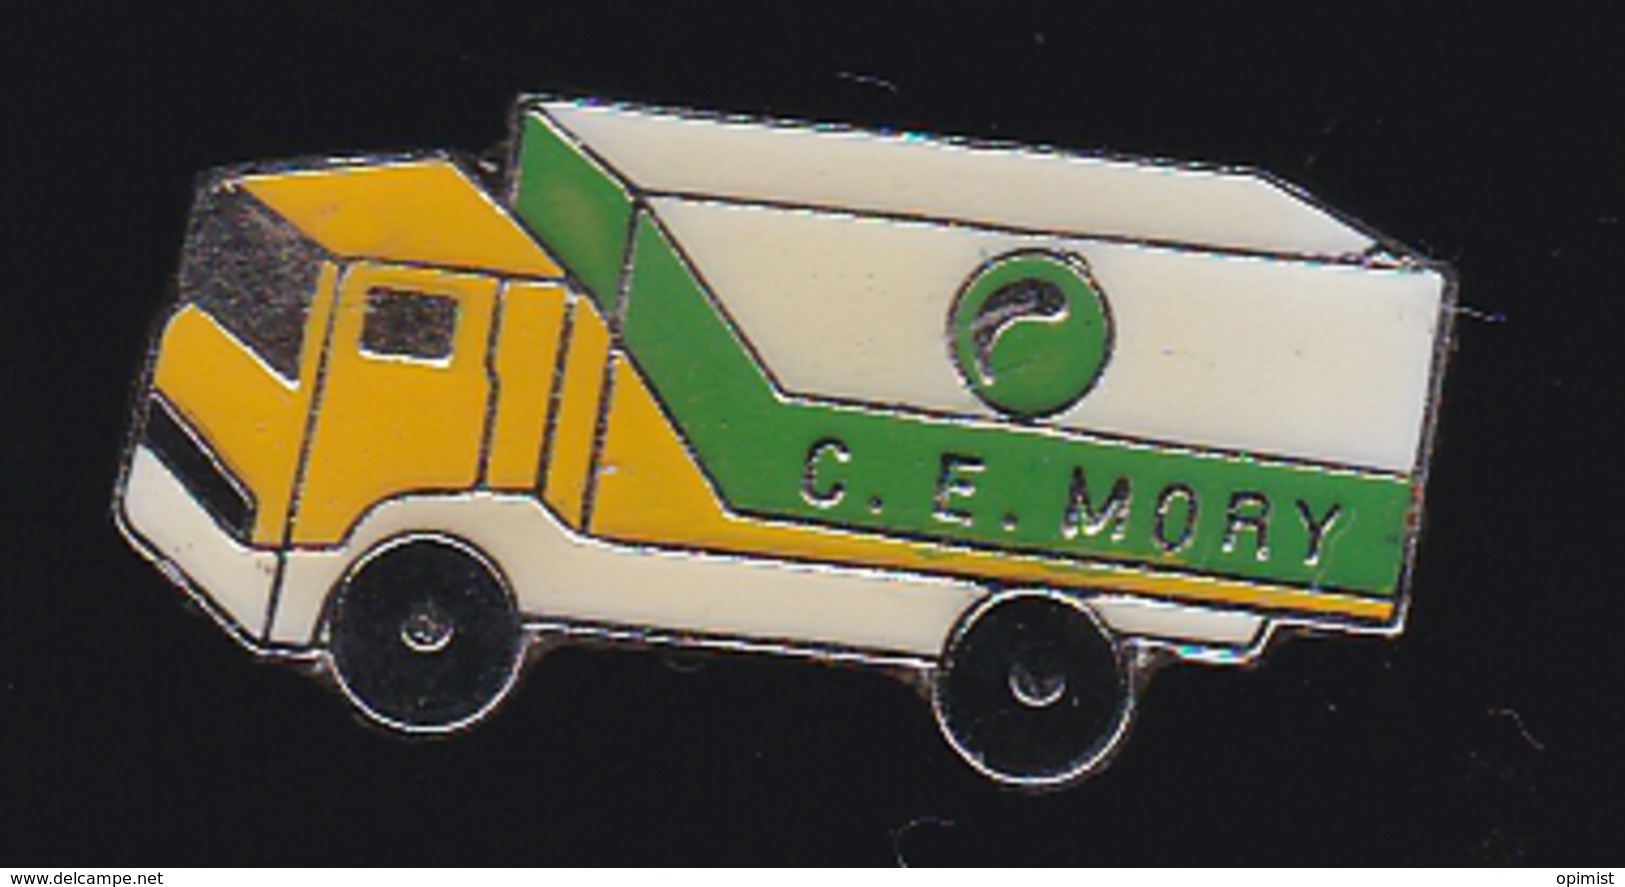 59776-pins. Comité D'entreprise (CE) Du Transporteur De Colis Mory Ducros  .Transports Routiers .camion.Truck - Transports